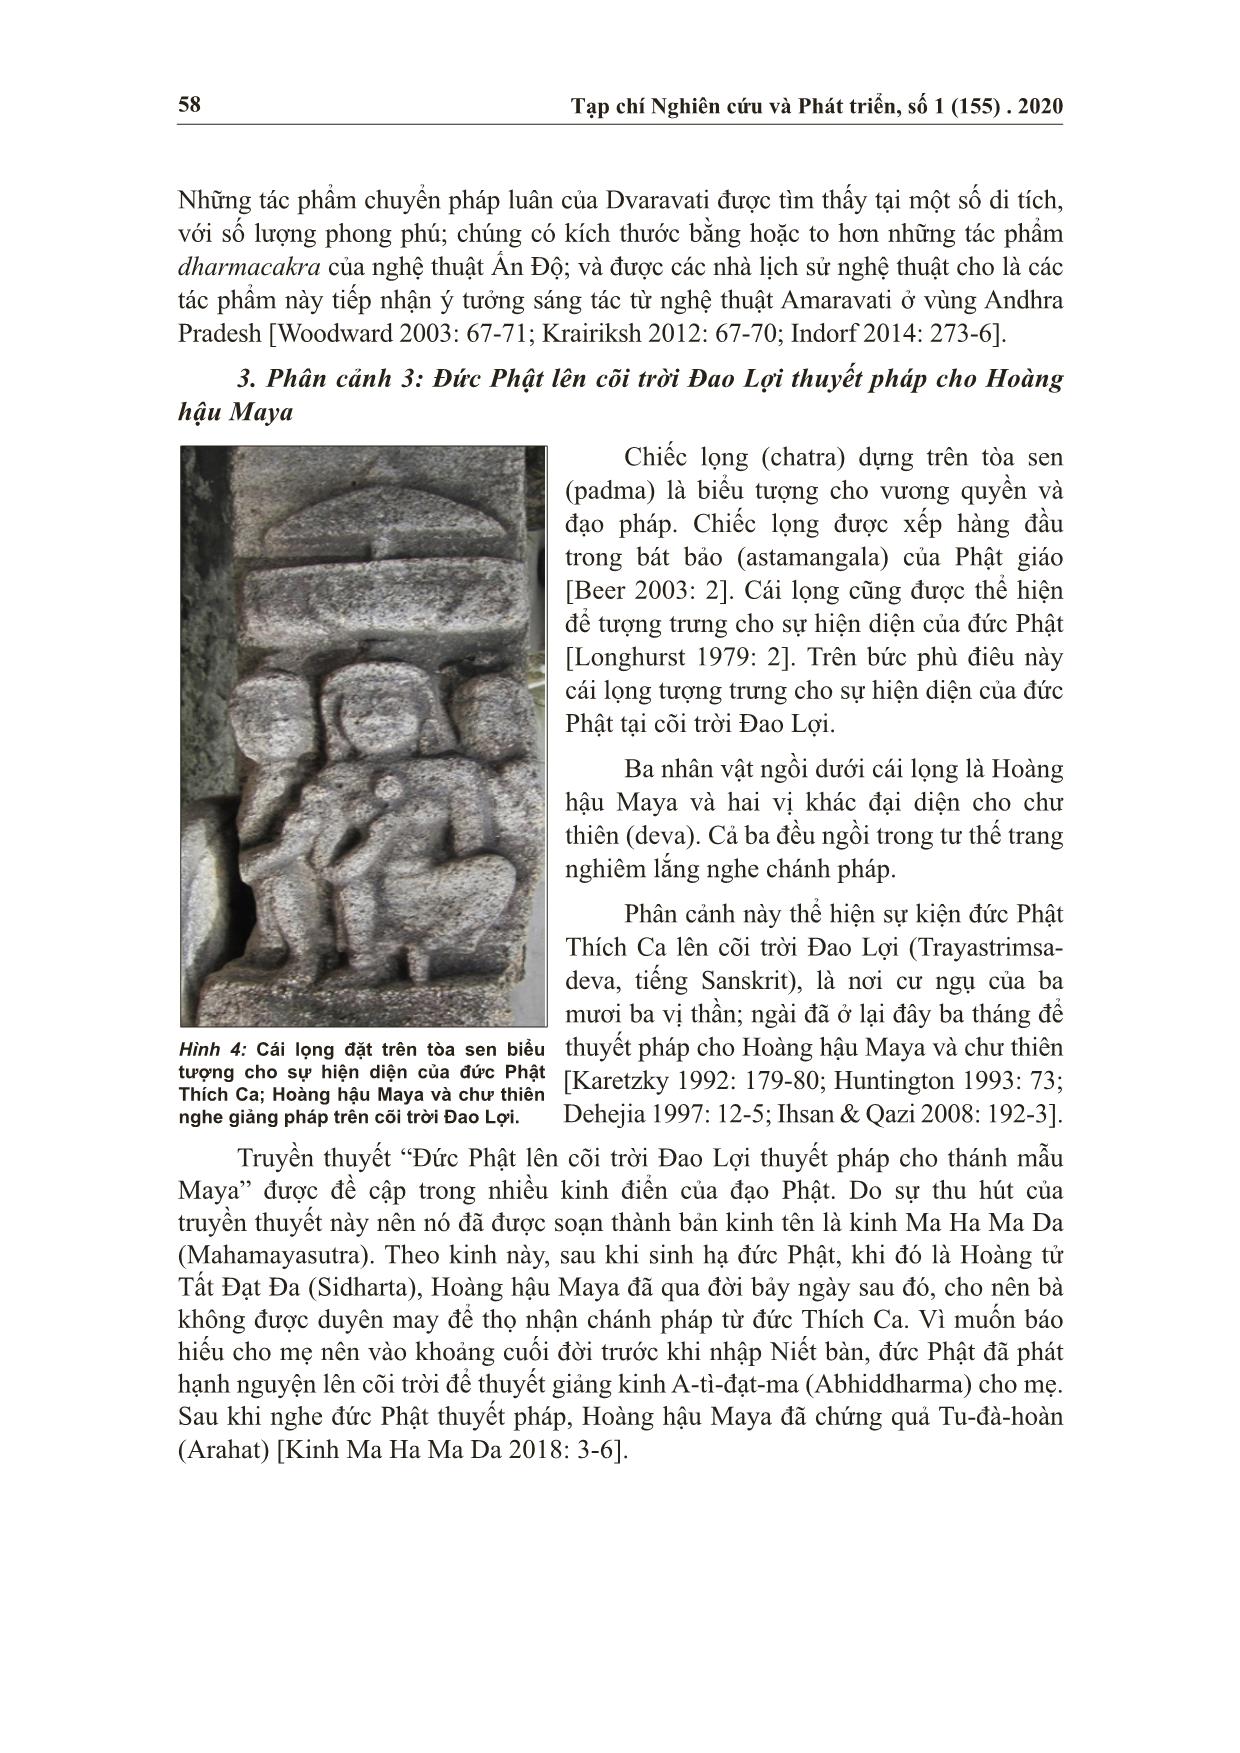 Điêu khắc kể chuyện nghệ thuật phật giáo trên trụ ốp tường lạc quới của bảo tàng An Giang trang 4